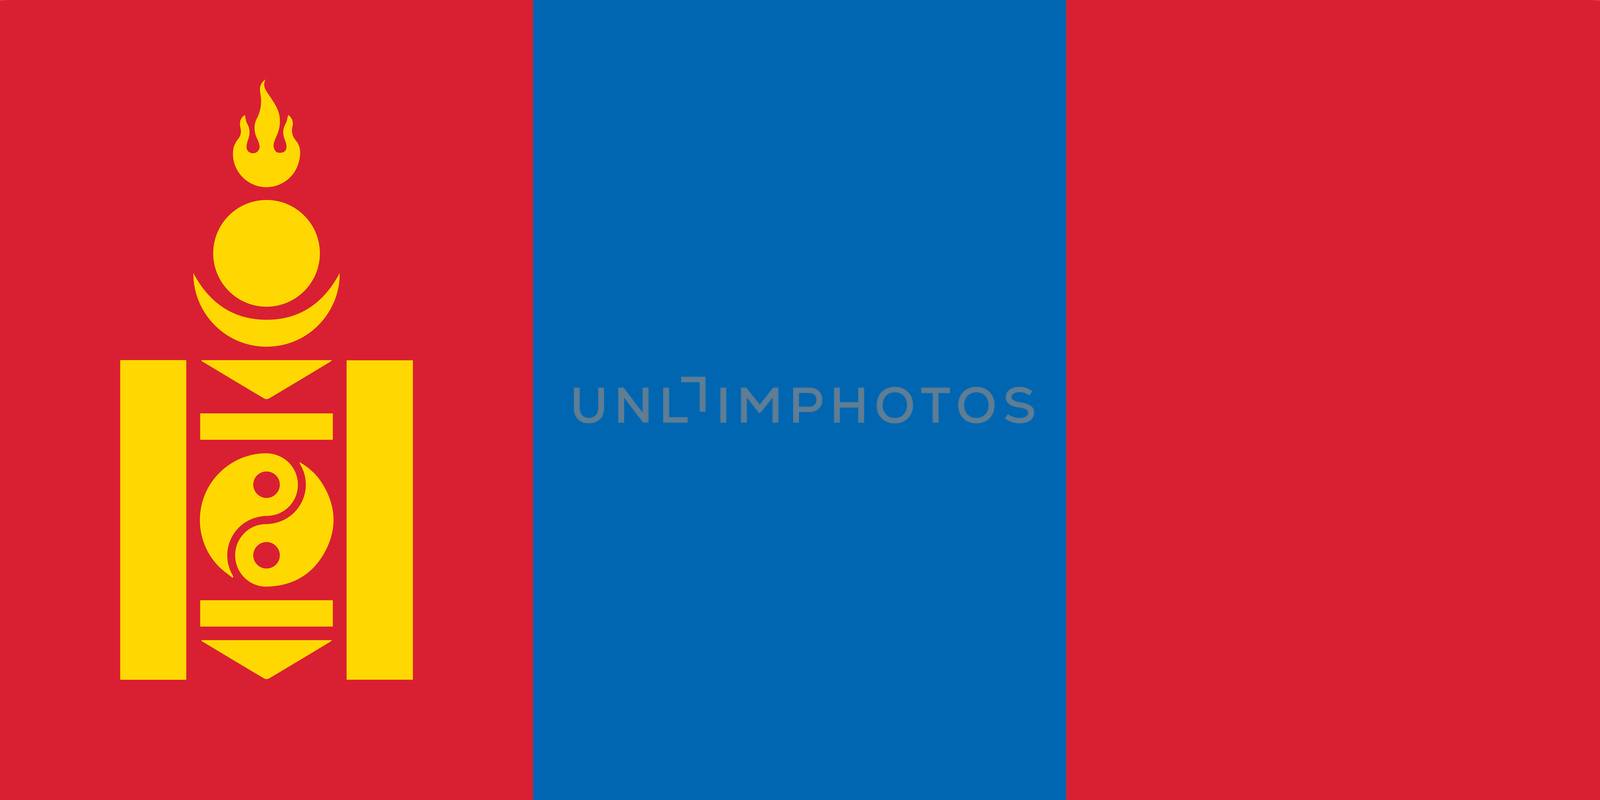 The Mongolia national flag